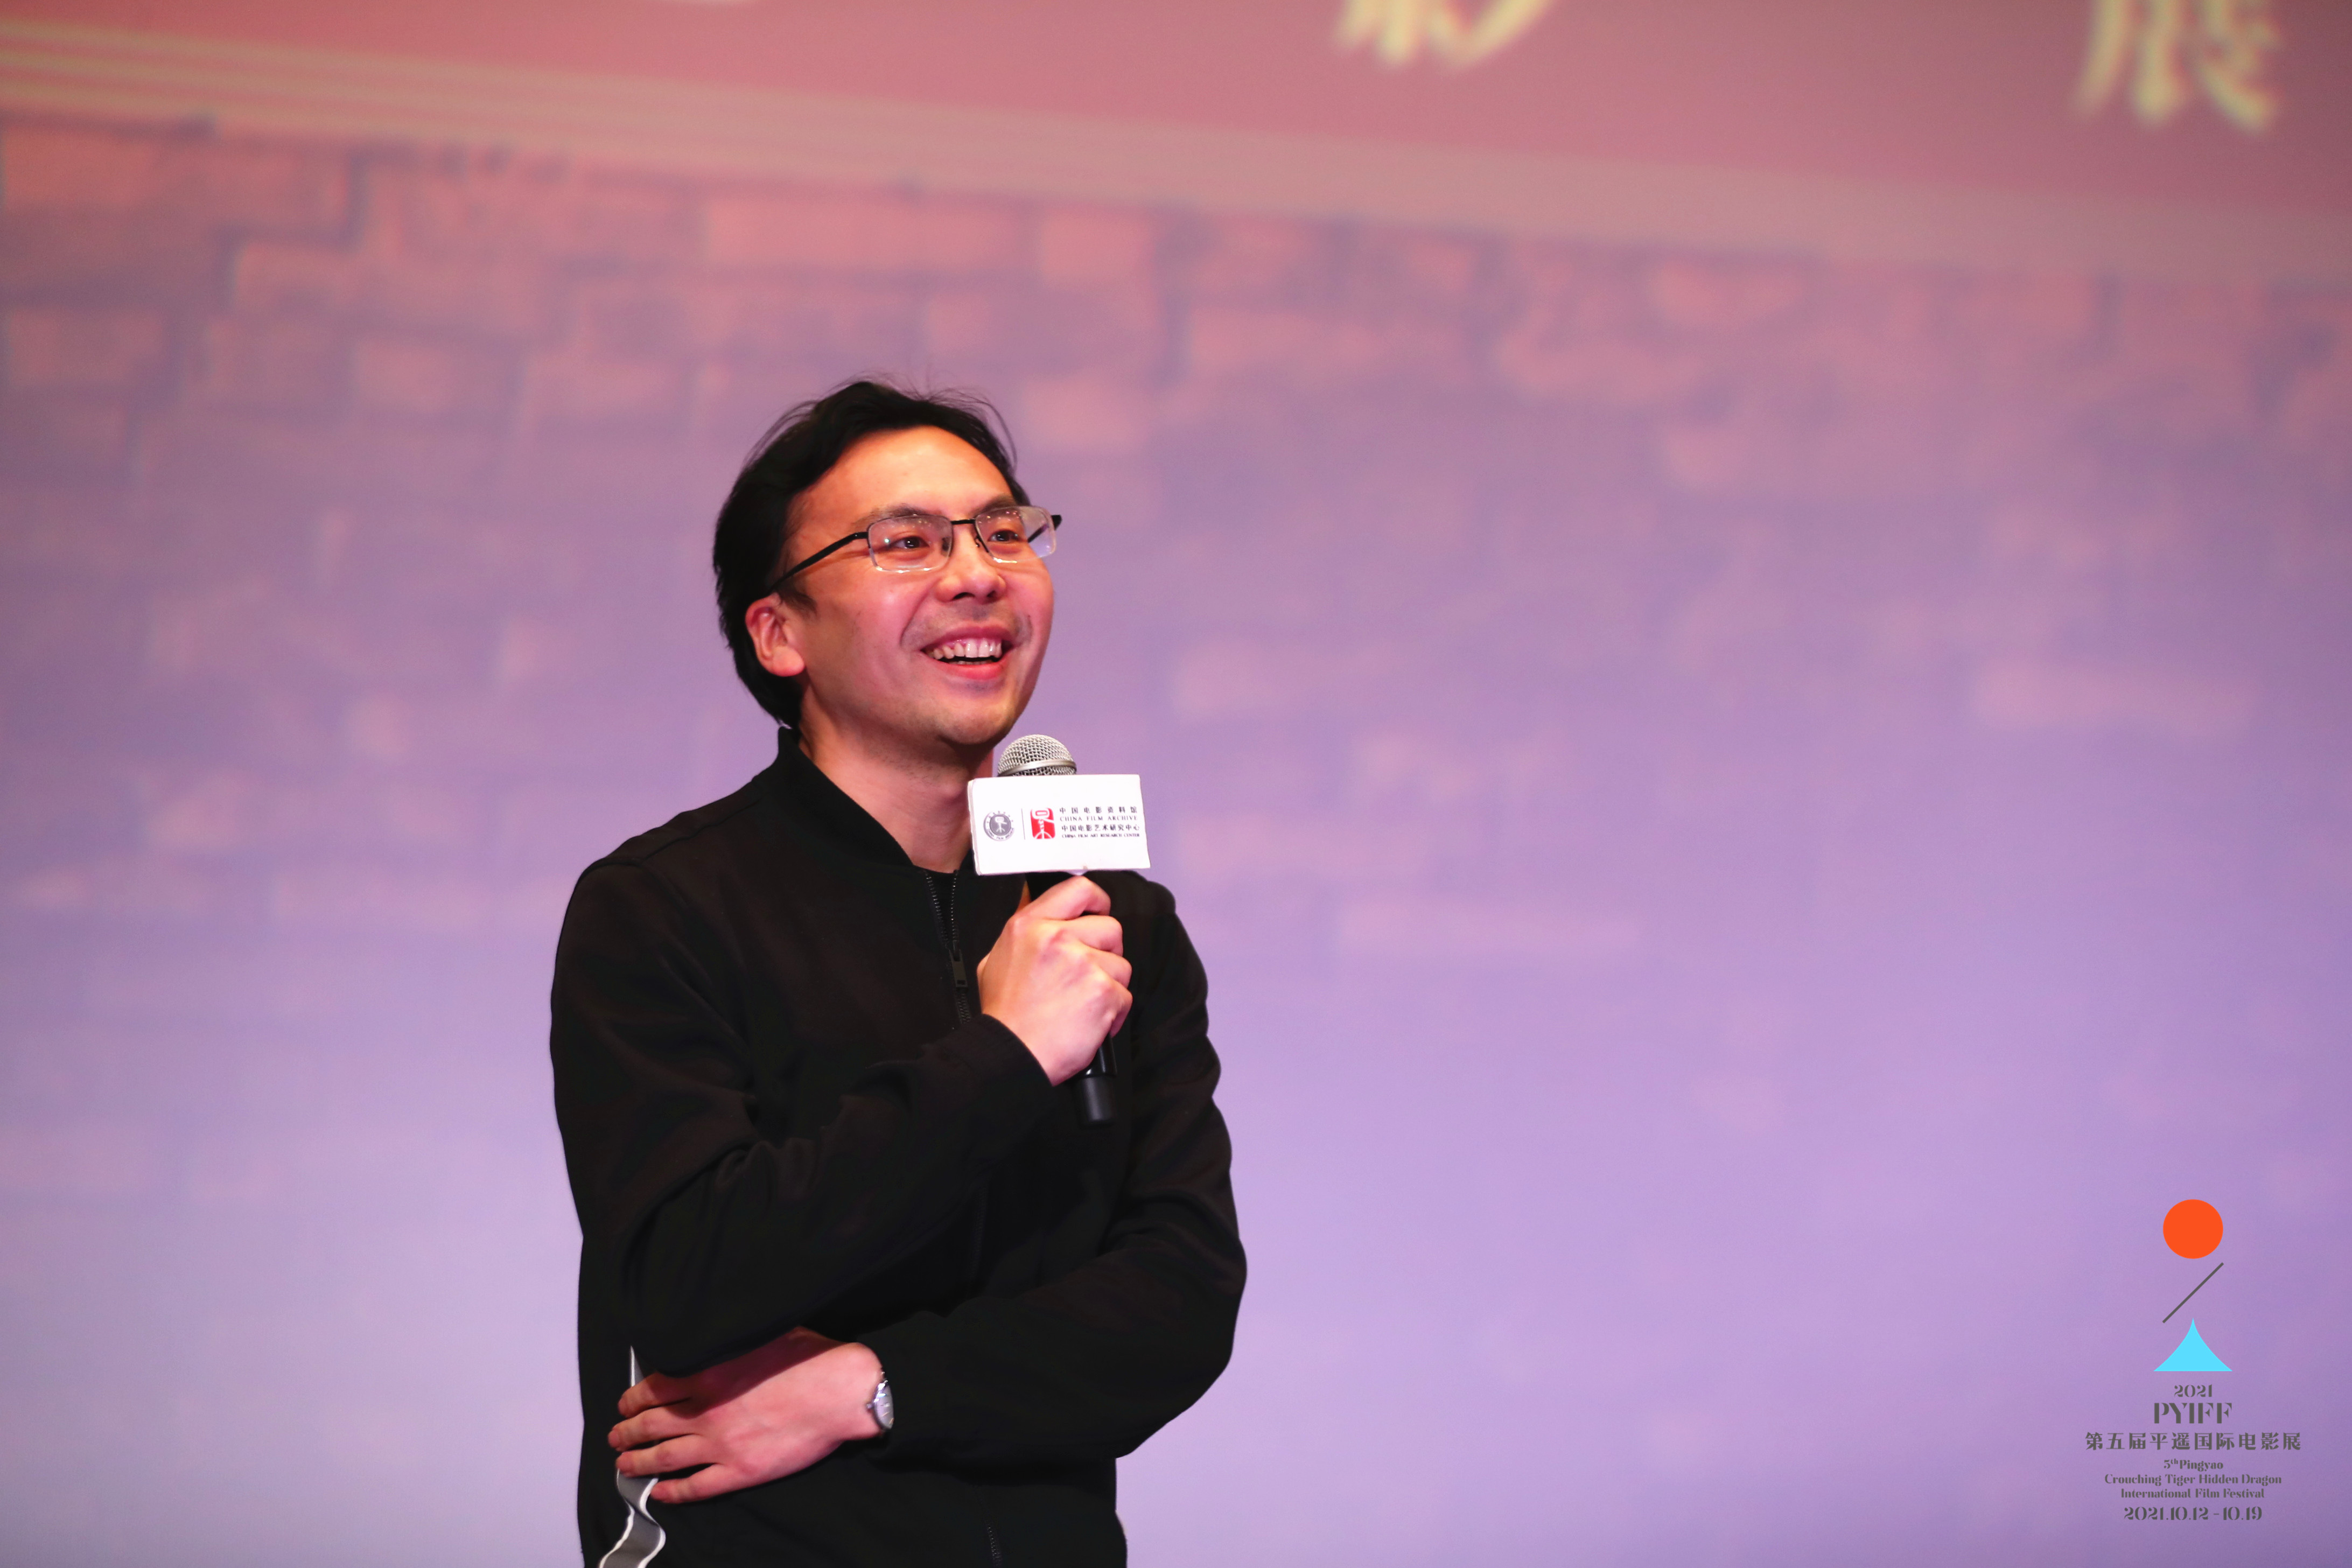 2022“平遥电影展在北京”拉开序幕 开幕影片为《白色大厦》